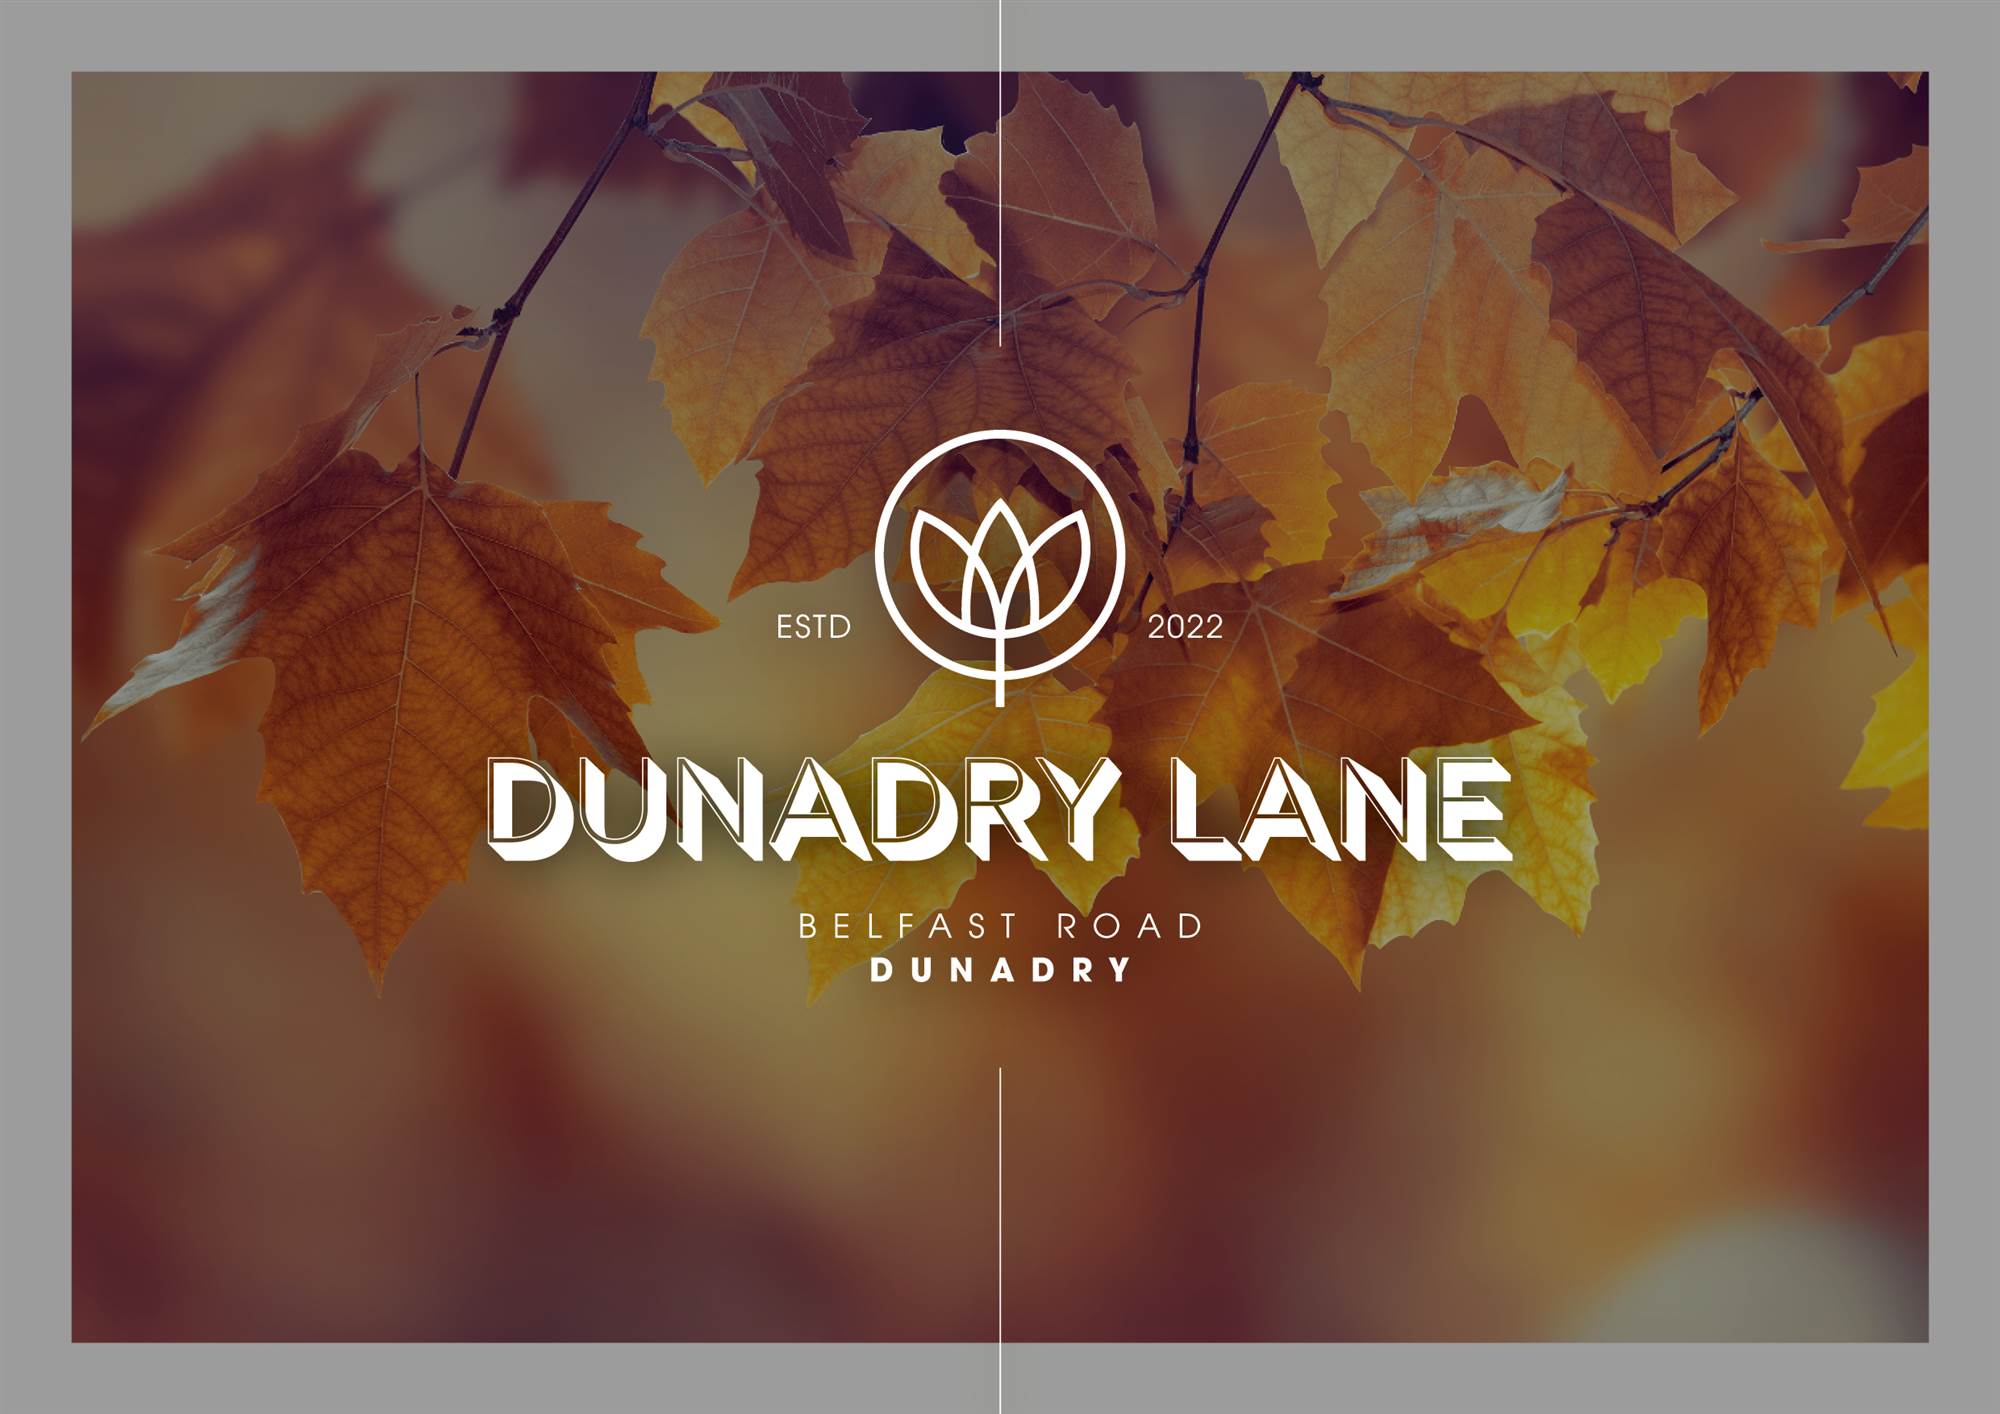 Dunadry Lane, Belfast Road, 